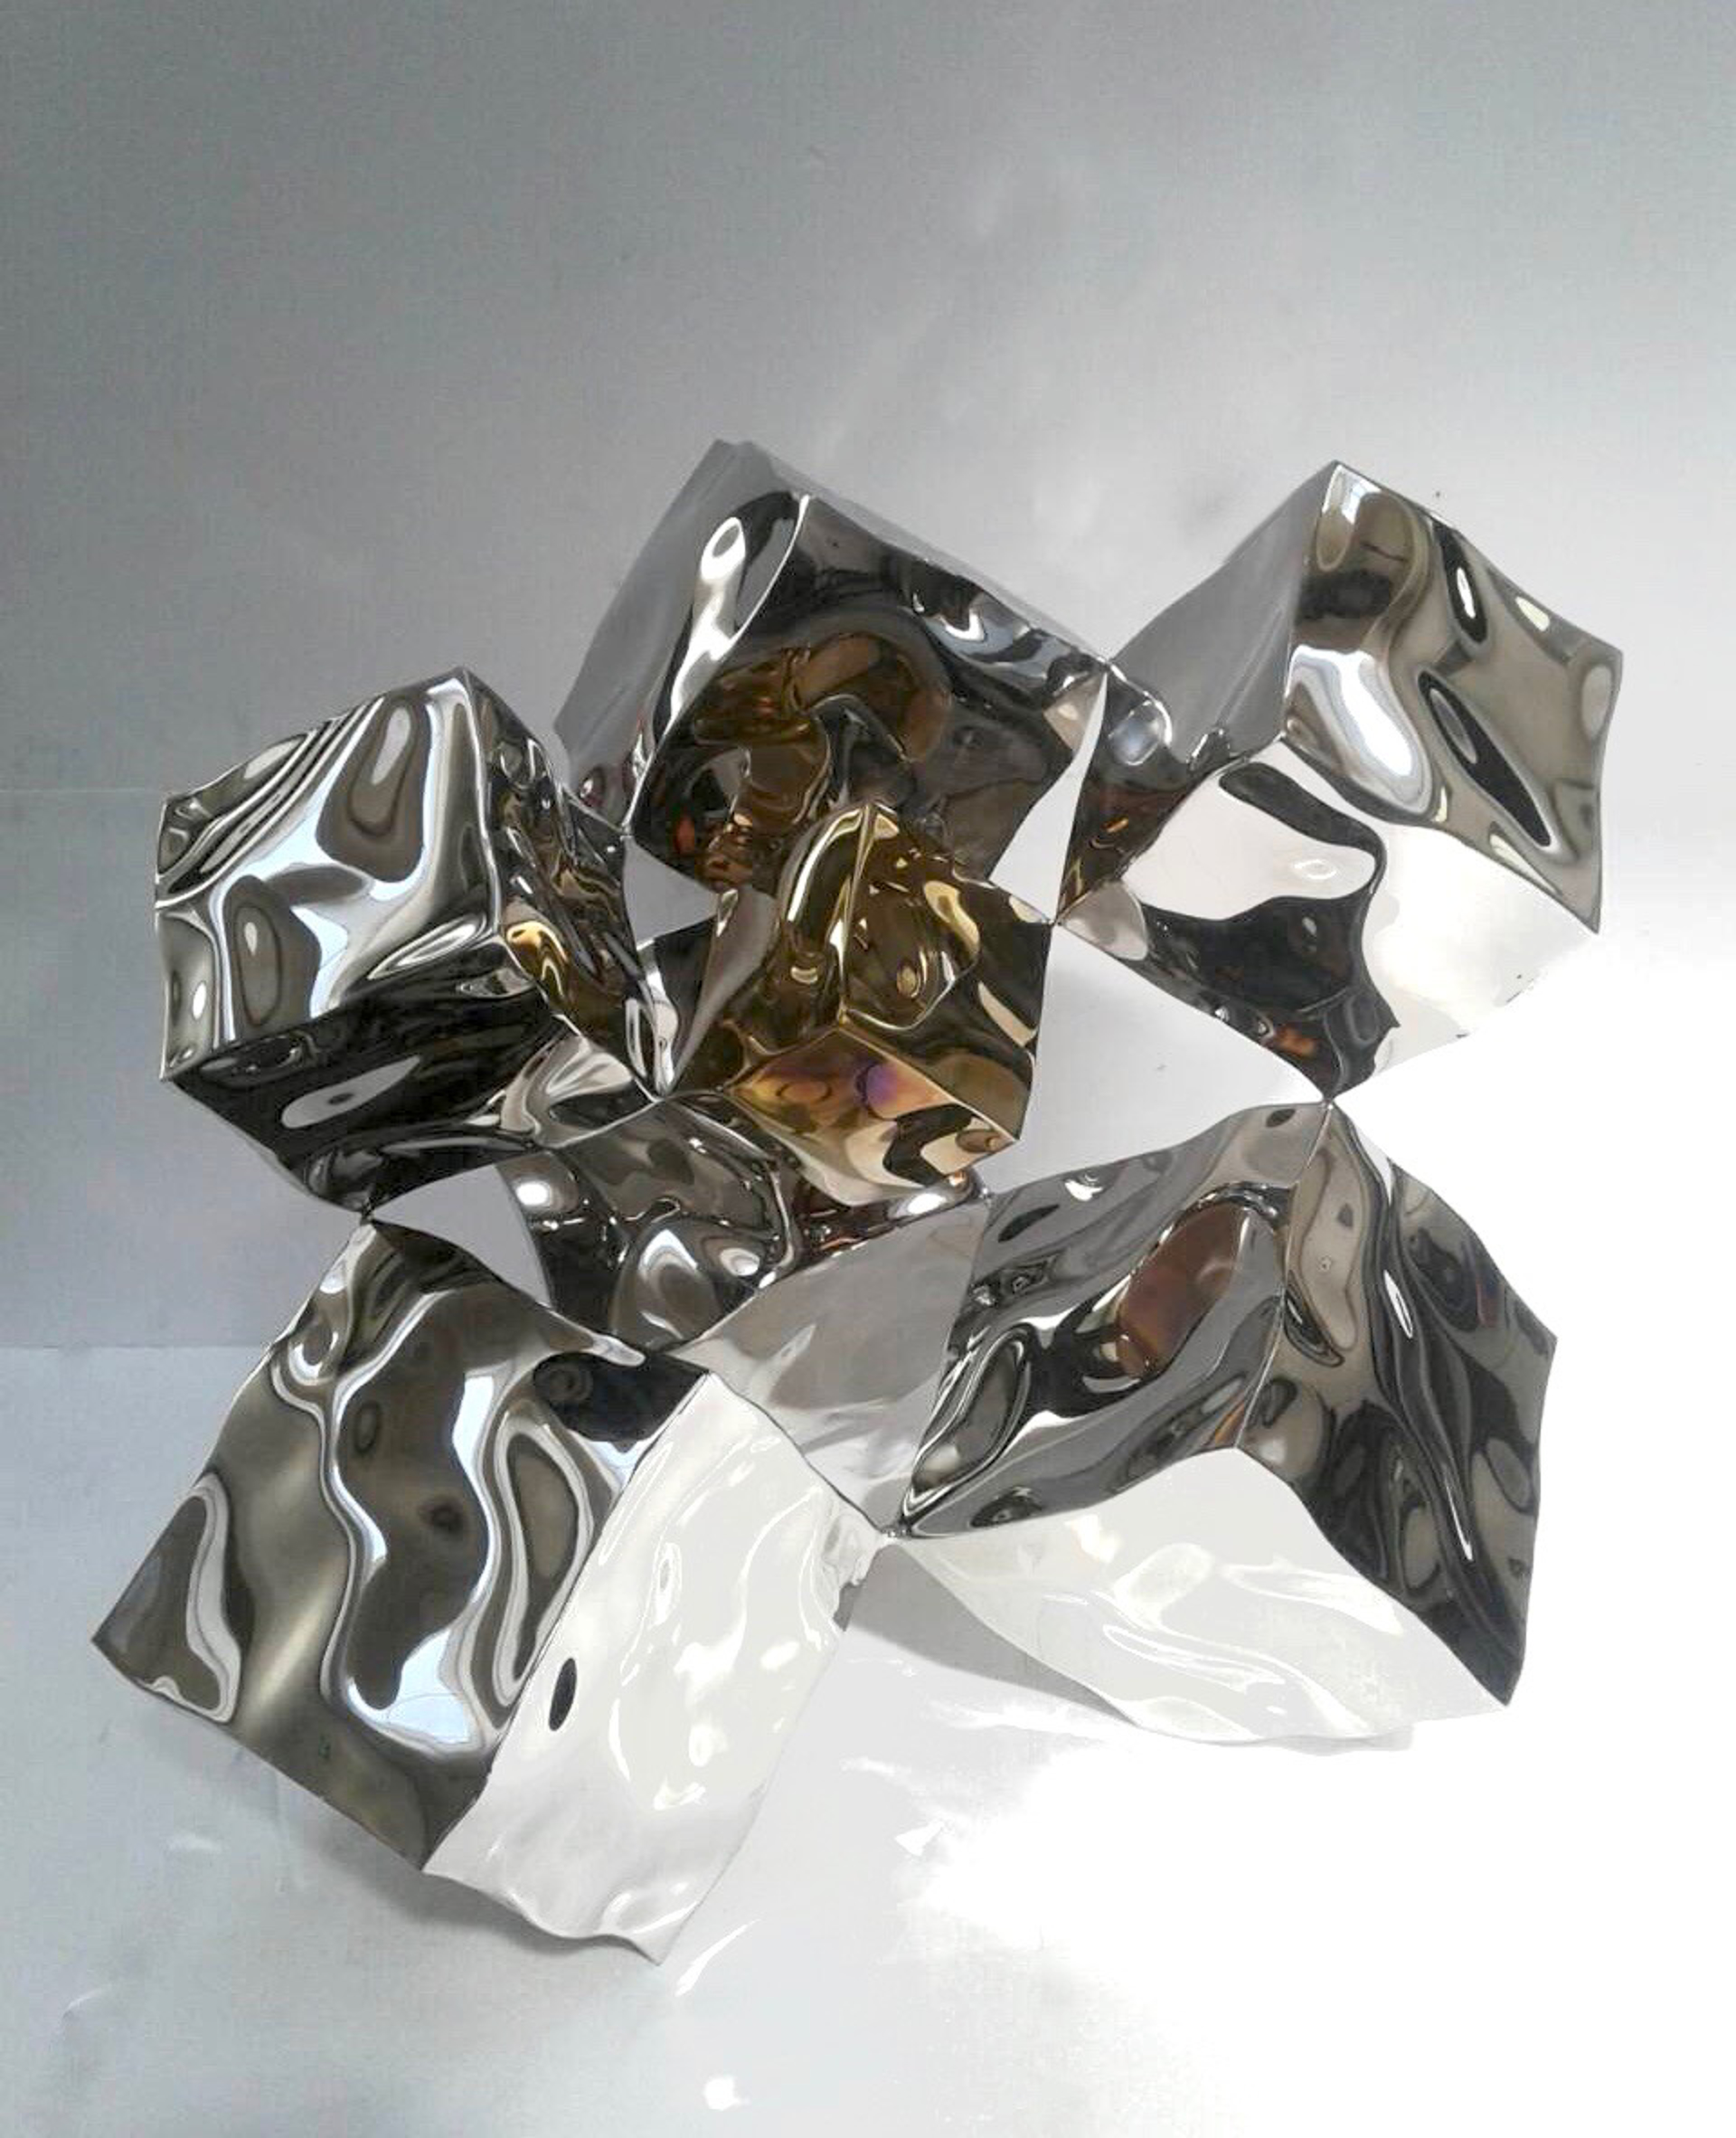 Tumbling Cubes III by Rado Kirov